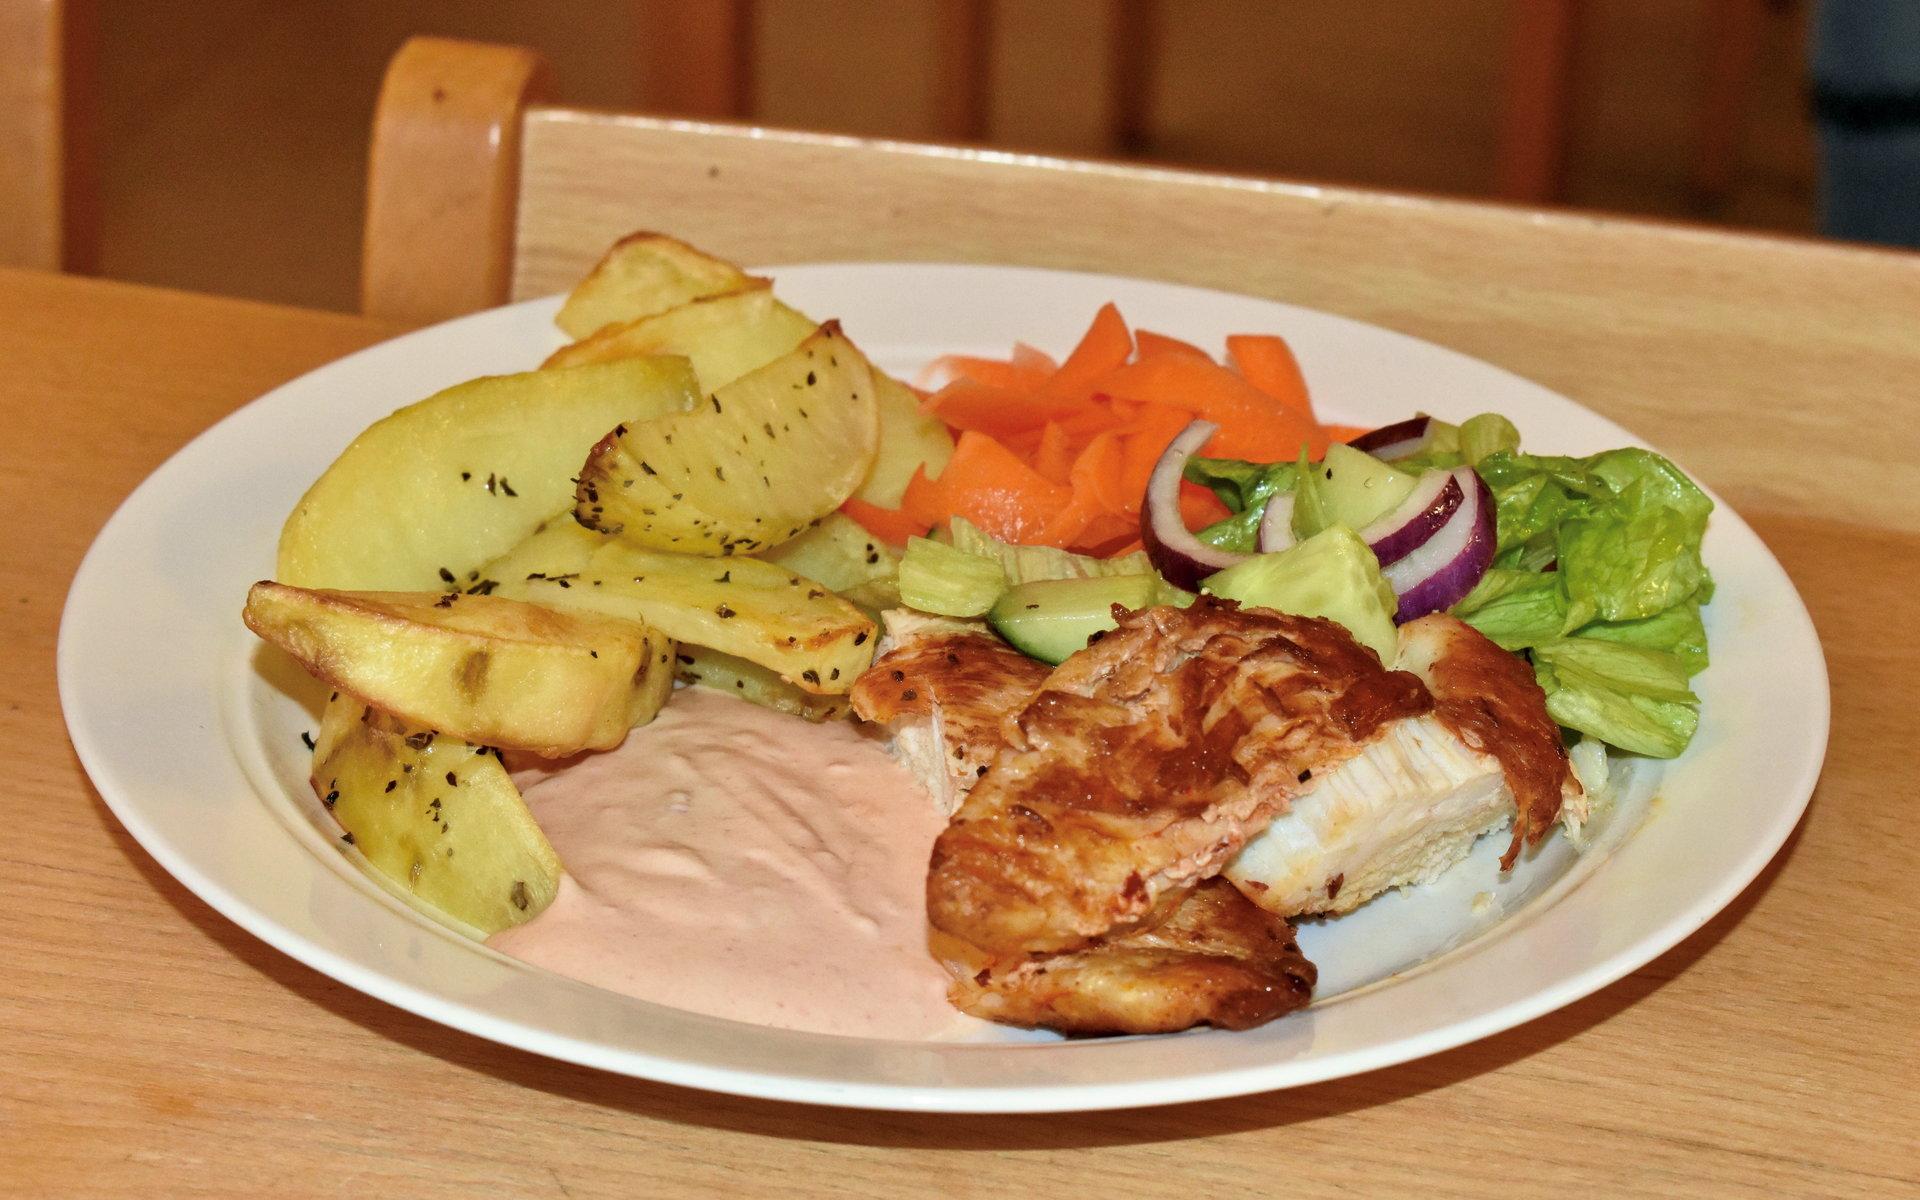 Niondeklassarna Selma Abrahamsson och Moa Larsson serverade stekt kycklingfilé med klyftpotatis.